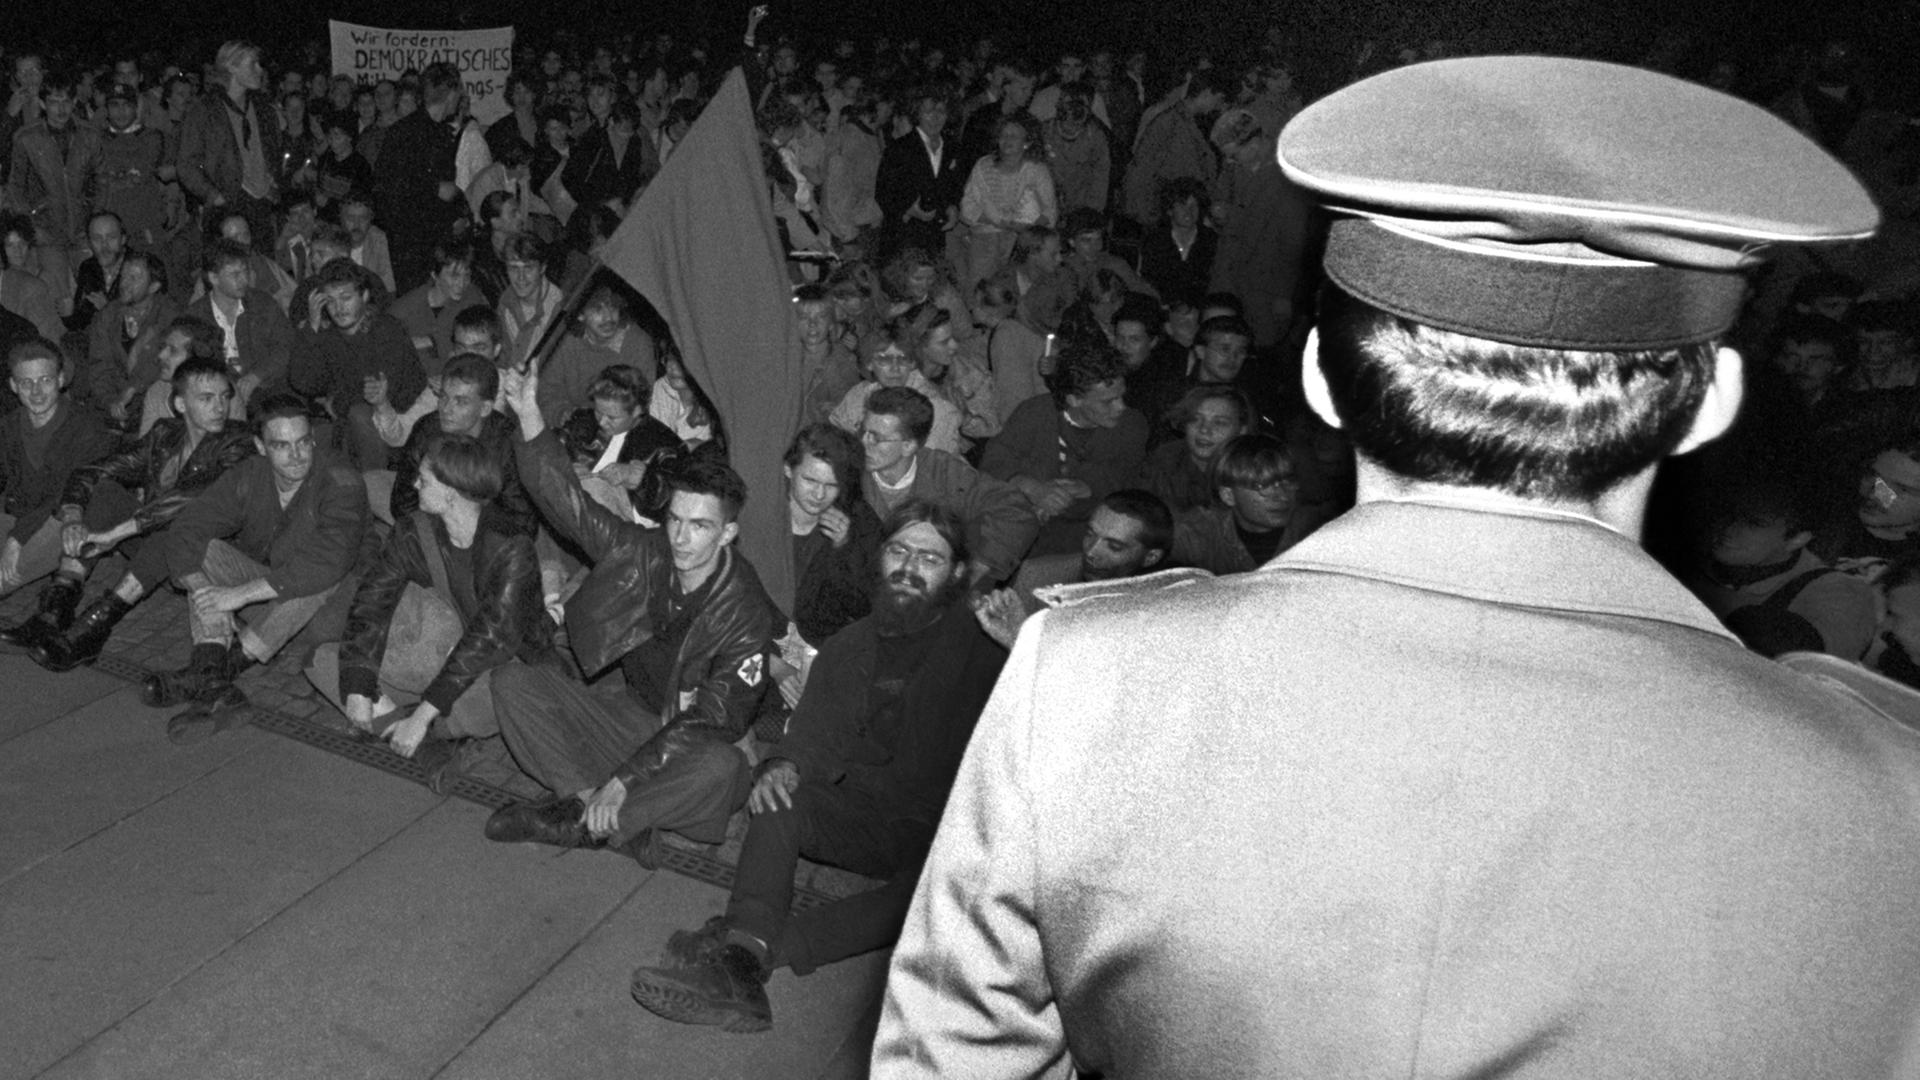 Zu sehen sind Demonstranten auf dem Marx-Engels-Platz in Ostberlin am 24.10.1989 nach der Wahl von Egon Krenz zum Staatsratsvorsitzenden der DDR. Sicherheitskräfte stehen bereit.